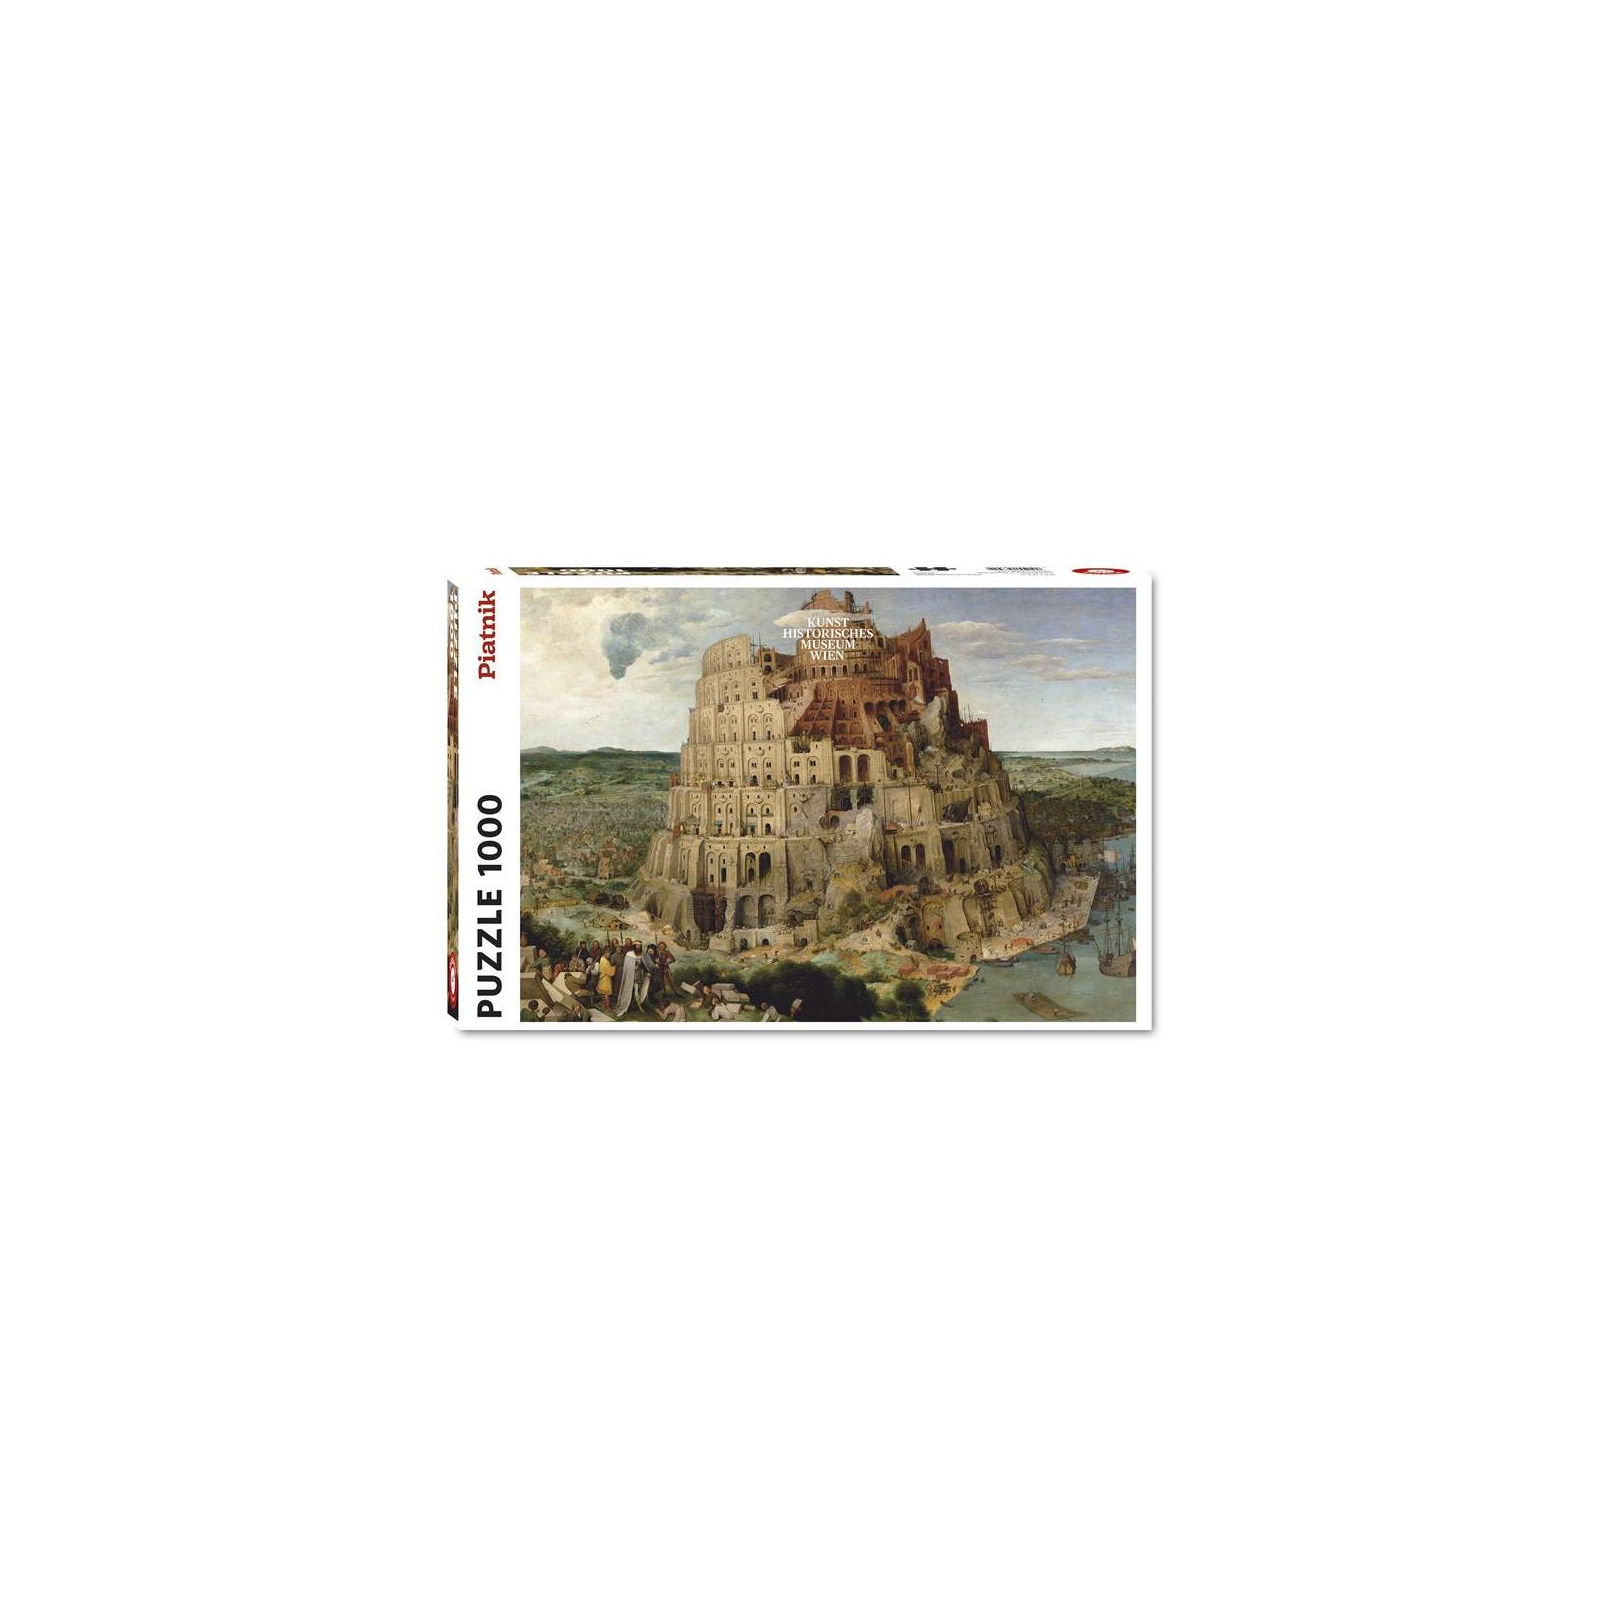 Пазл Piatnik Вавилонская башня Питер Брейгель, 1000 элементов (PT-563942)